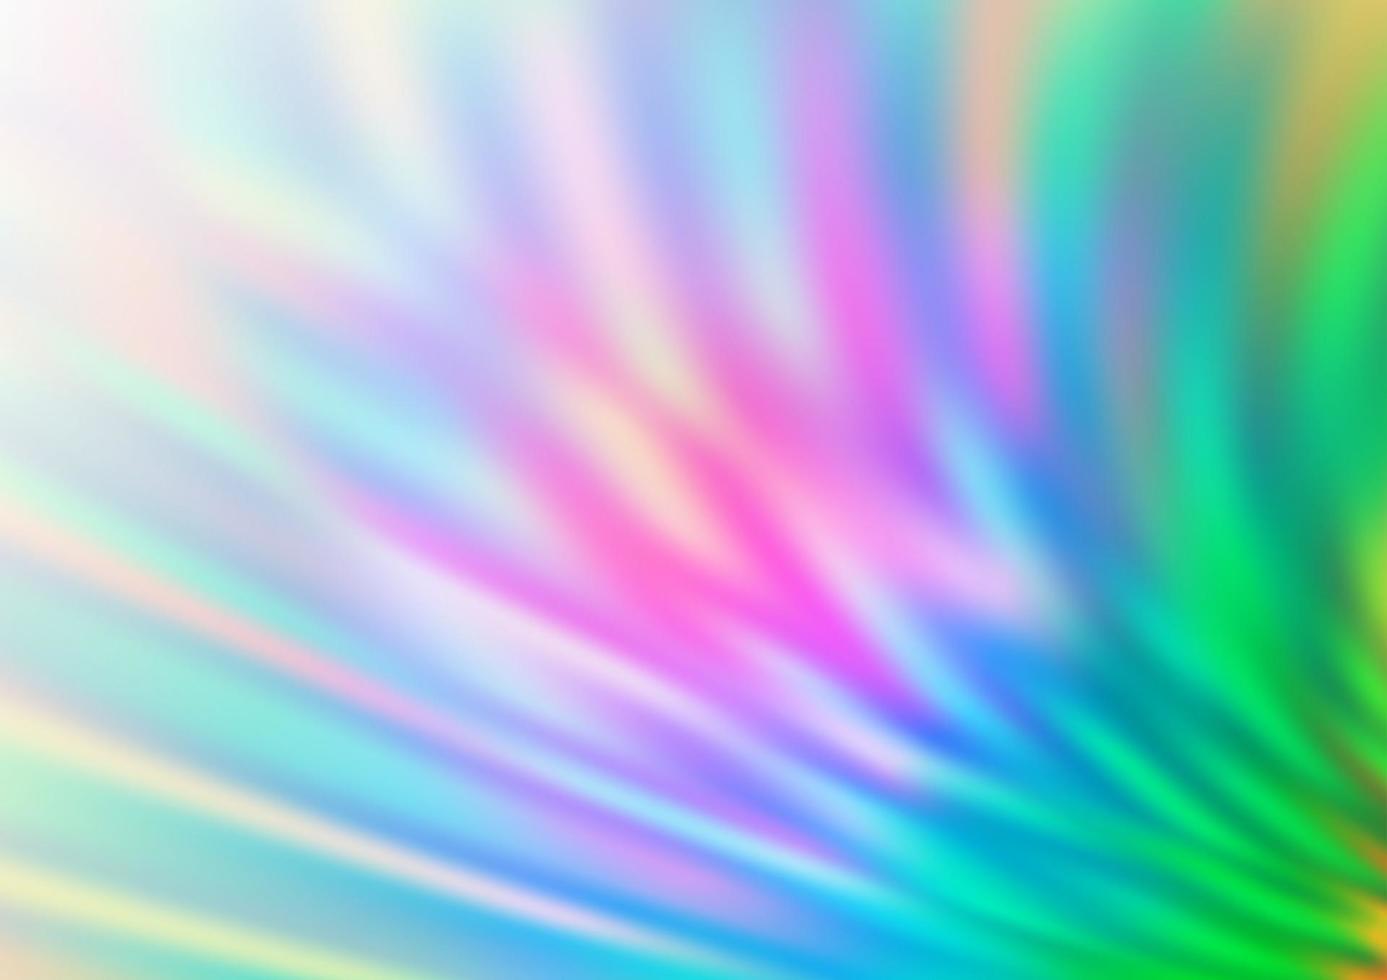 ljus mångfärgad, regnbåge vektor blank abstrakt mall.